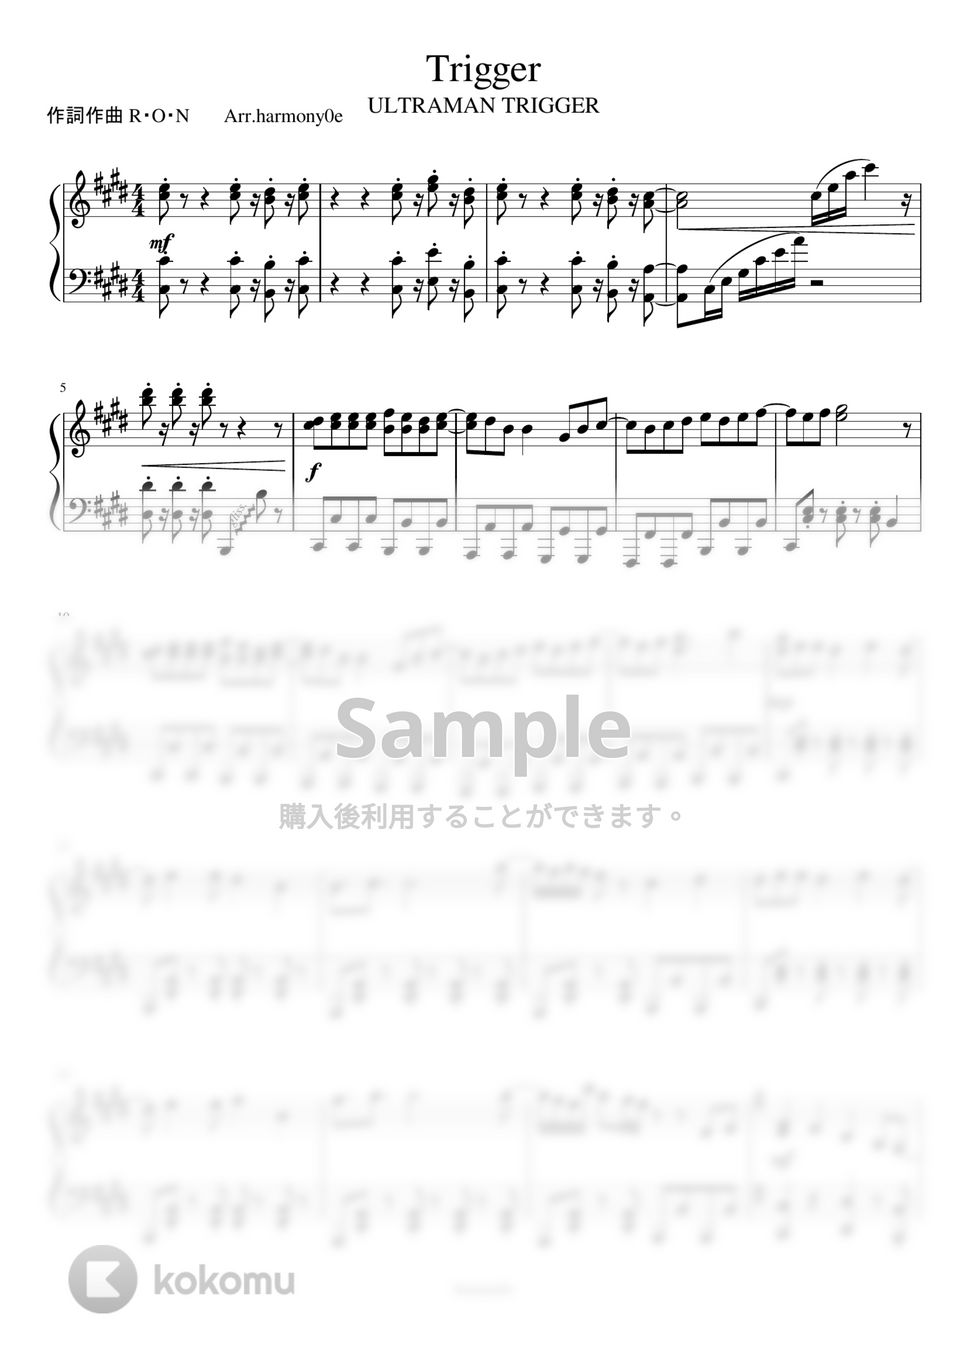 ウルトラマントリガー NEW GENERATION TIGA - Trigger by harmony piano